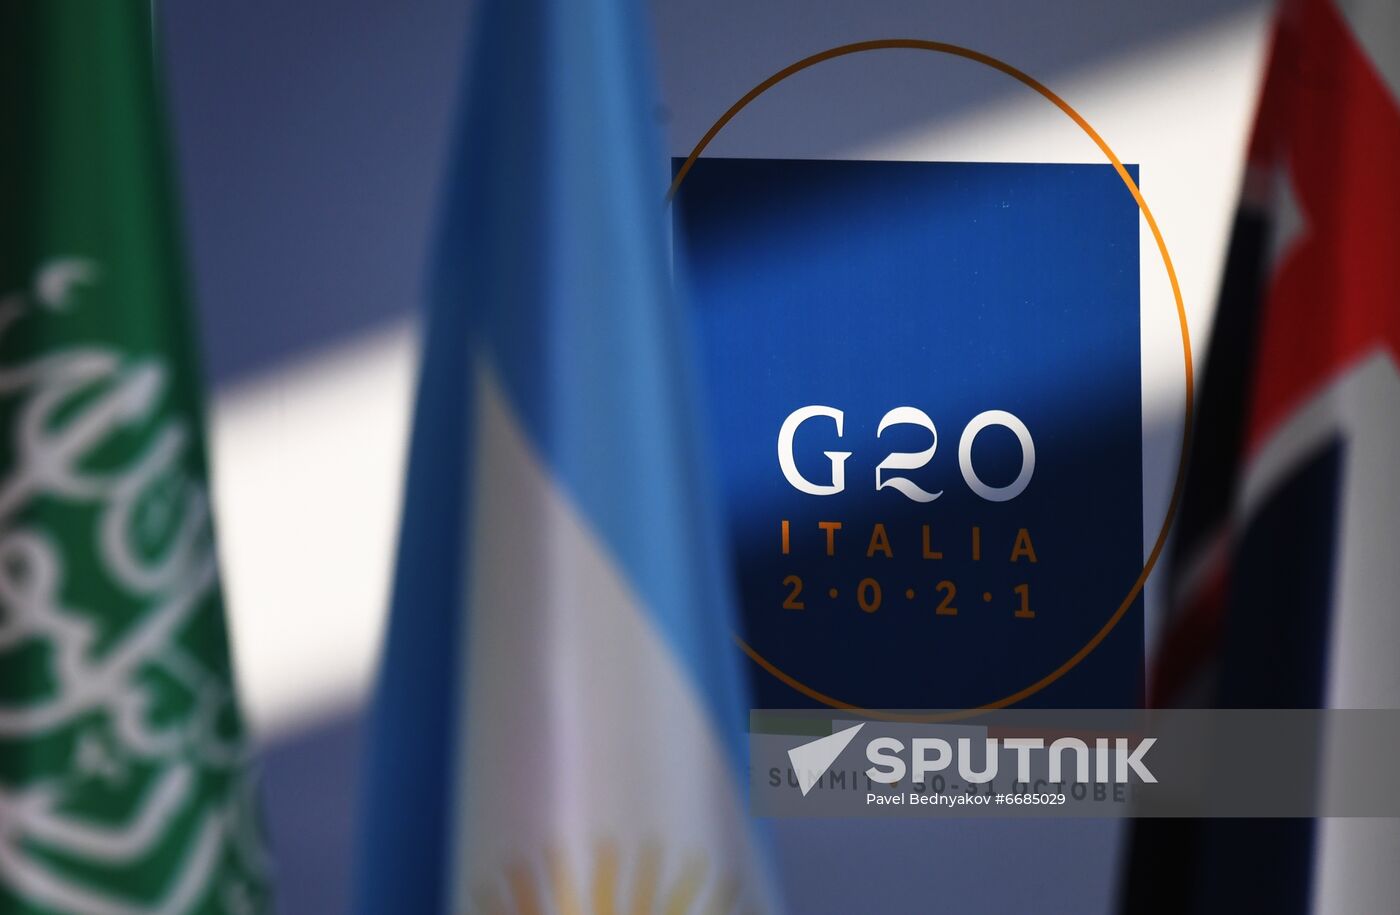 Italy G20 Summit